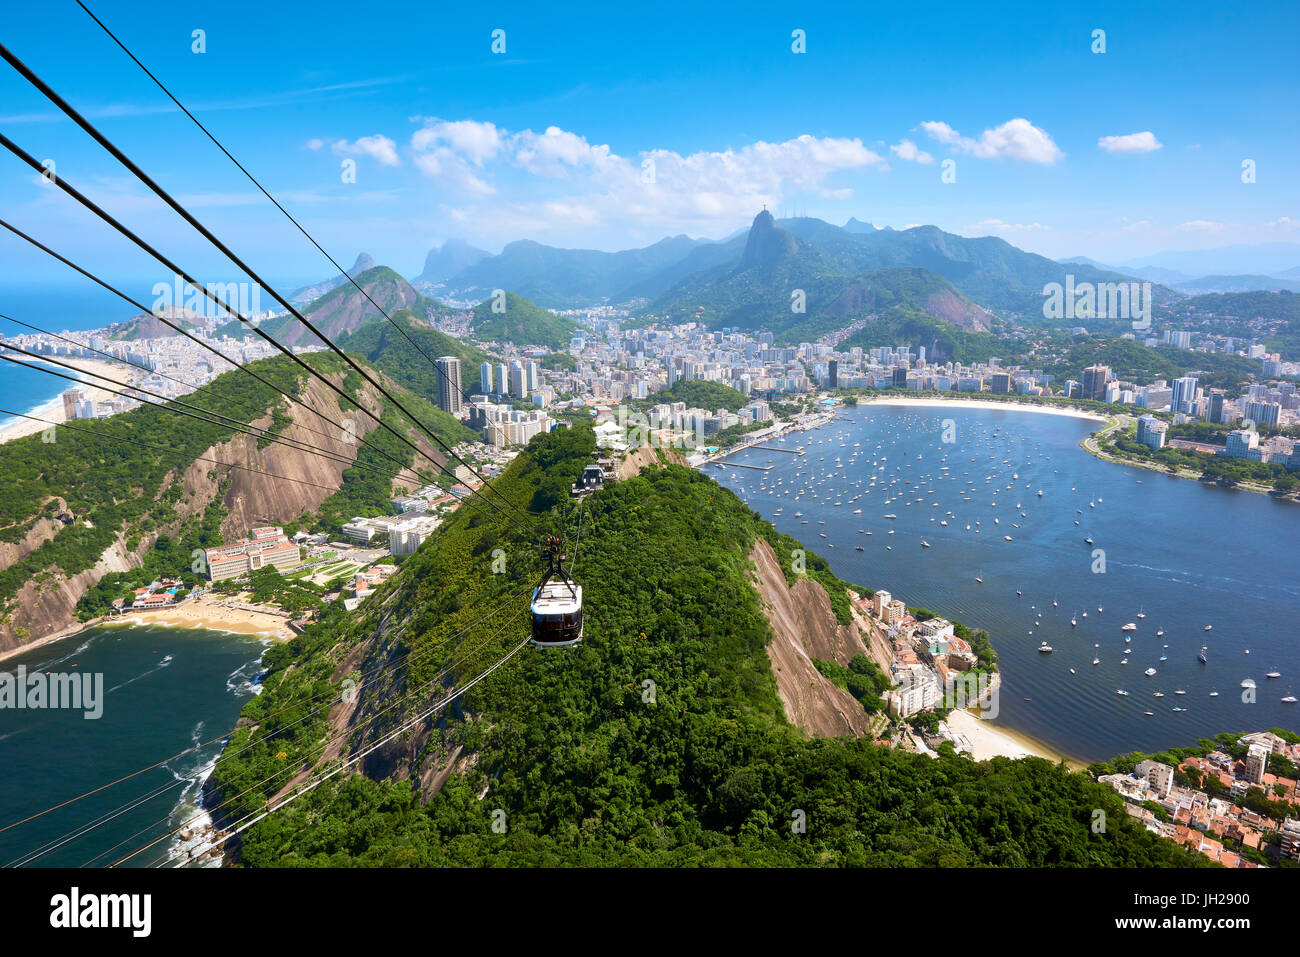 Rio de Janeiro seen from atop Sugarloaf mountain with Guanabara Bay and Praia Vermelha to the left, Rio de Janeiro, Brazil Stock Photo